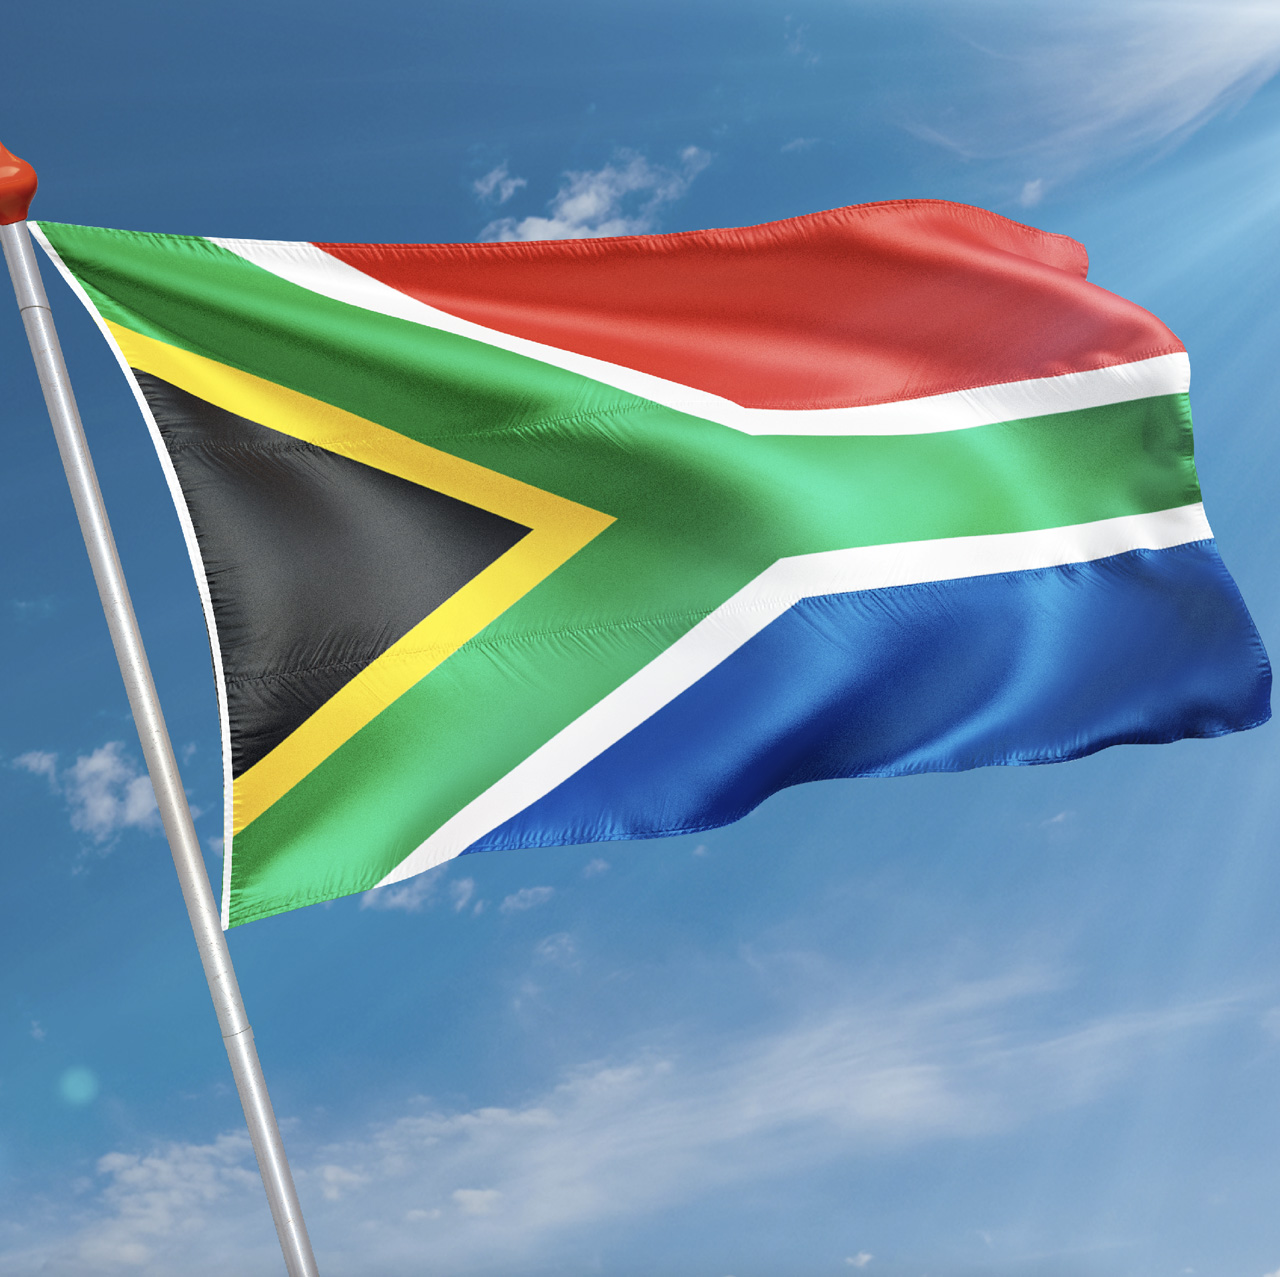 Griekse Vlag en Vlag Van Zuid-Afrika: Een Reis door de Wereld van Nationale Vlaggen